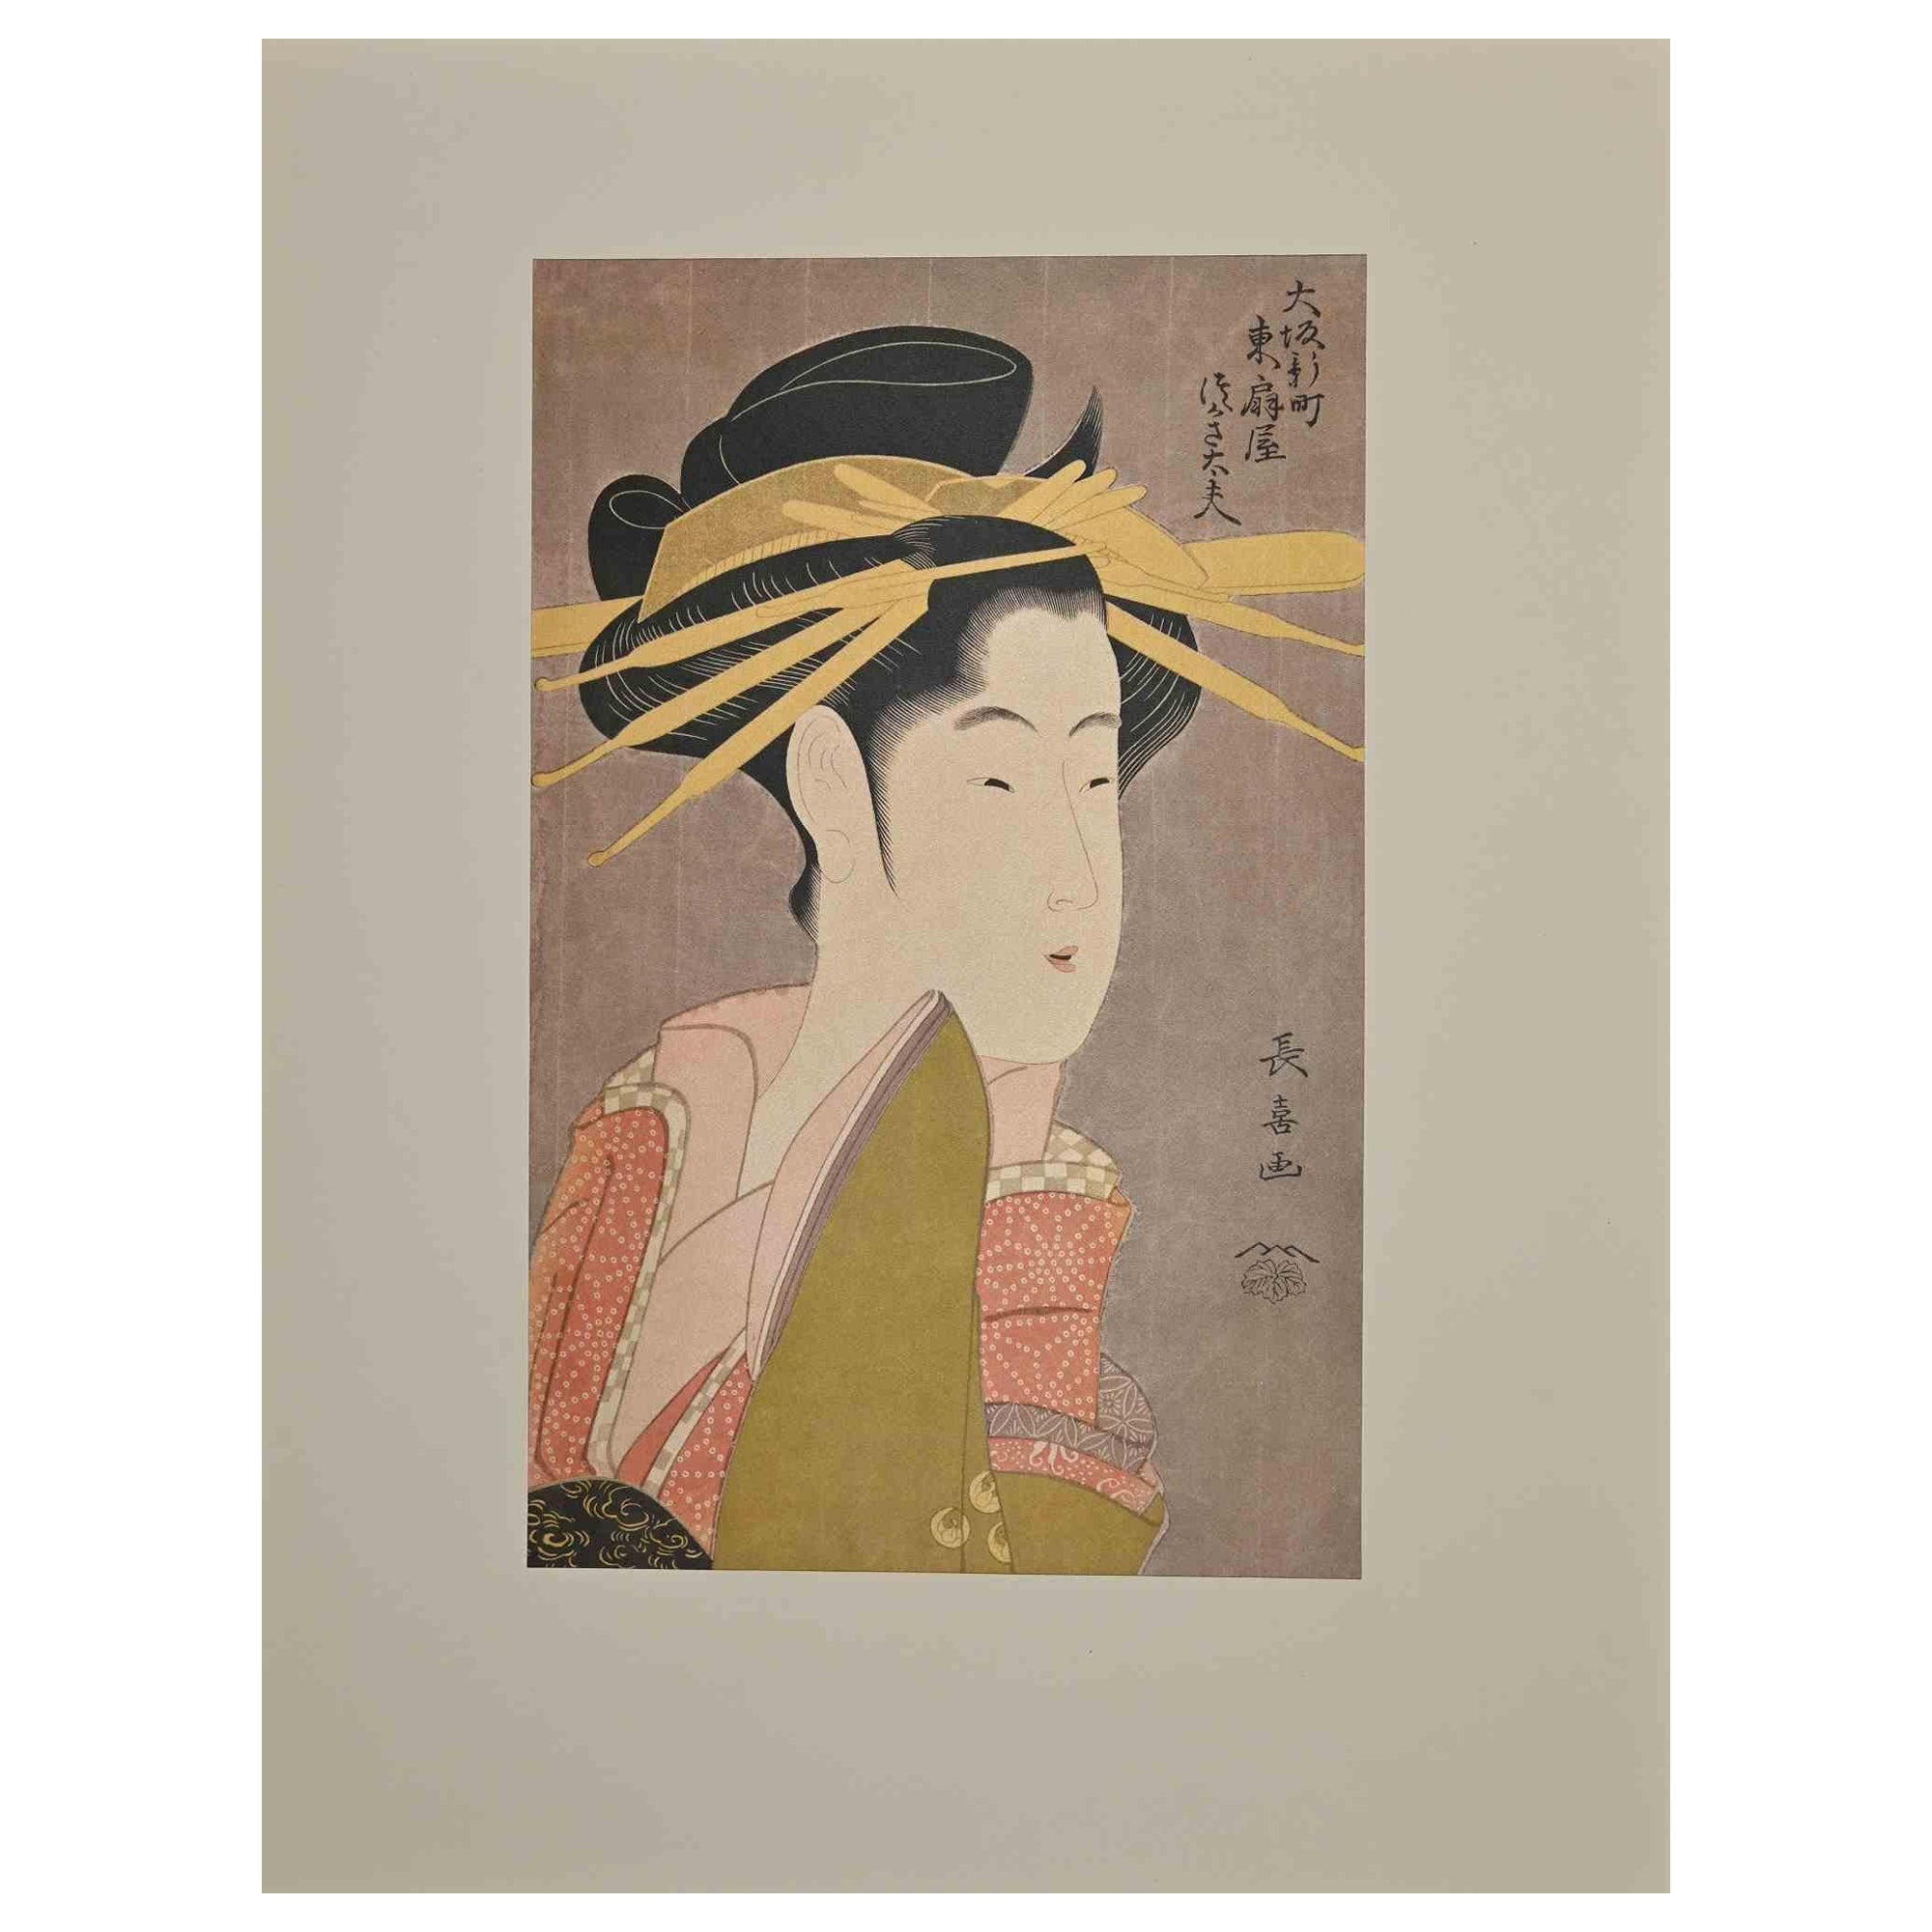 Shiratsuyu - Screen Print after Chokosai Eisho - Mid-20th century 